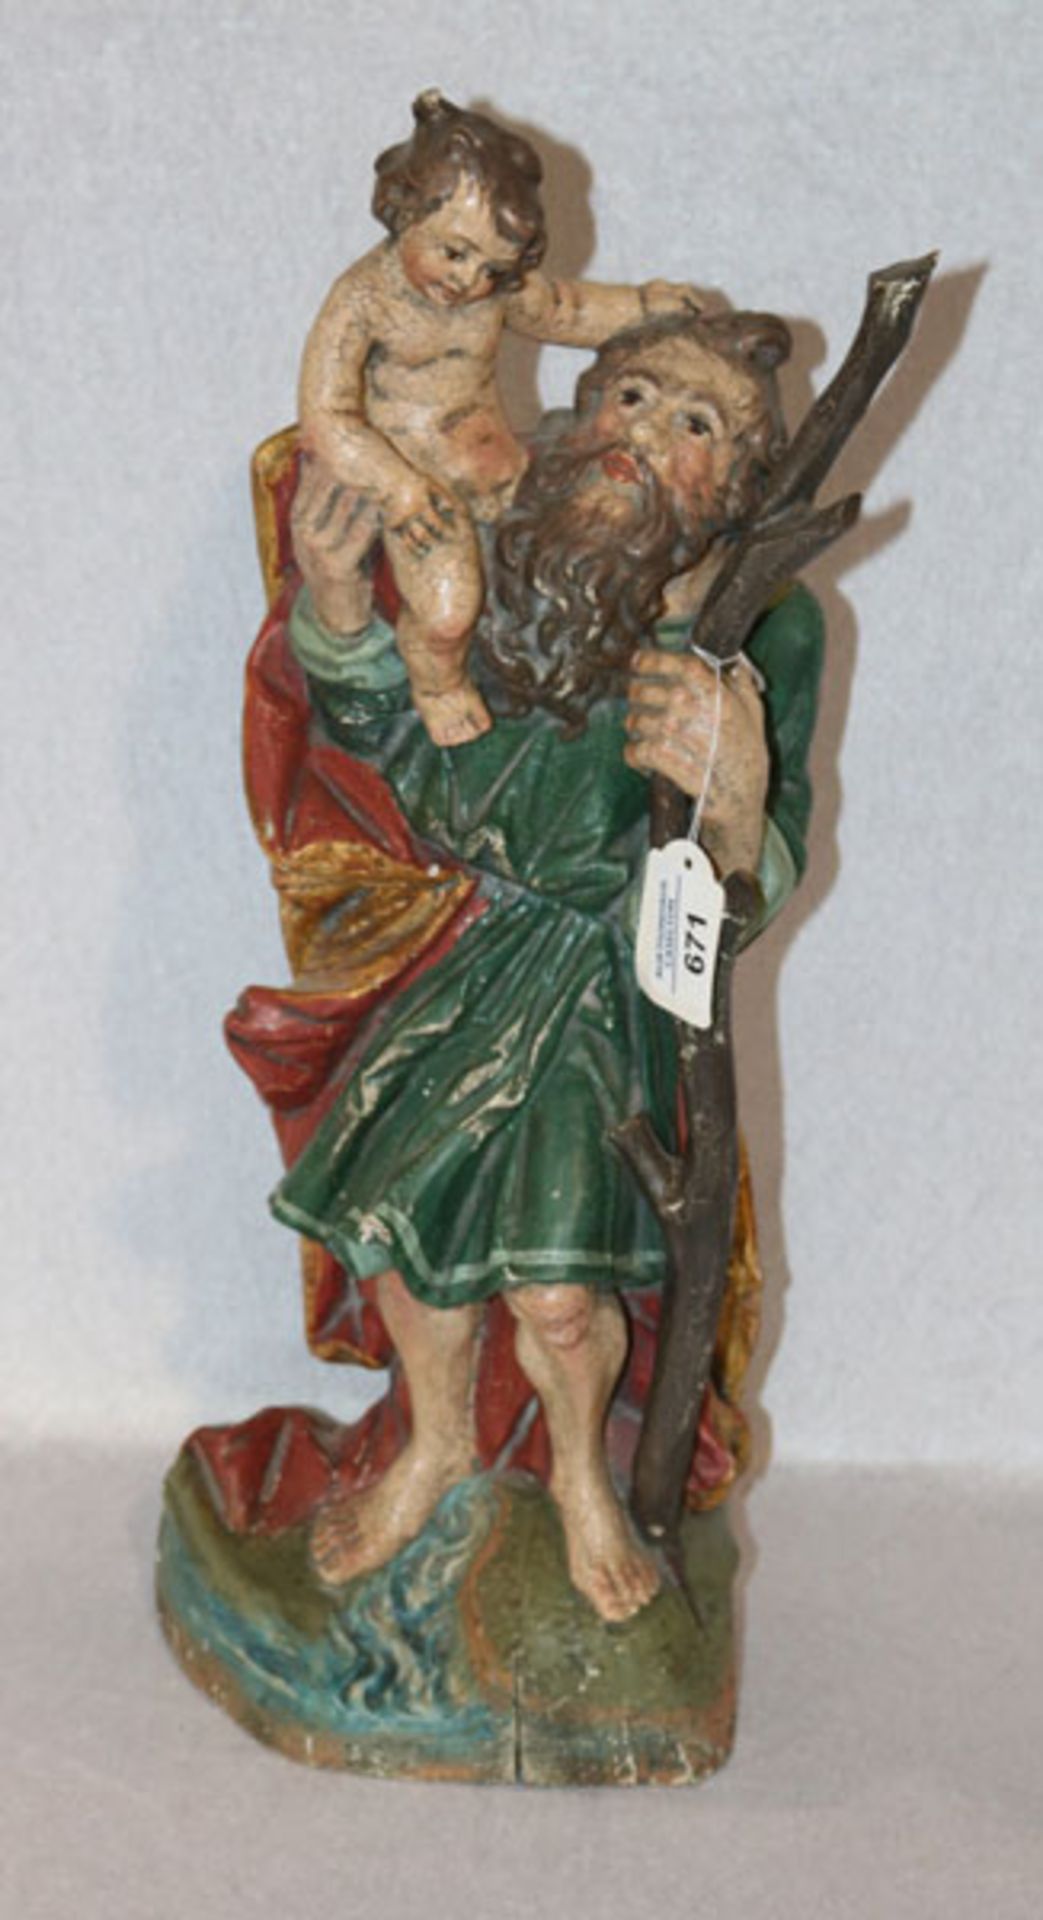 Holz Figurenskulptur 'Heiliger Christophorus', farbig gefaßt, H 50 cm, B 20 cm, T 11 cm,